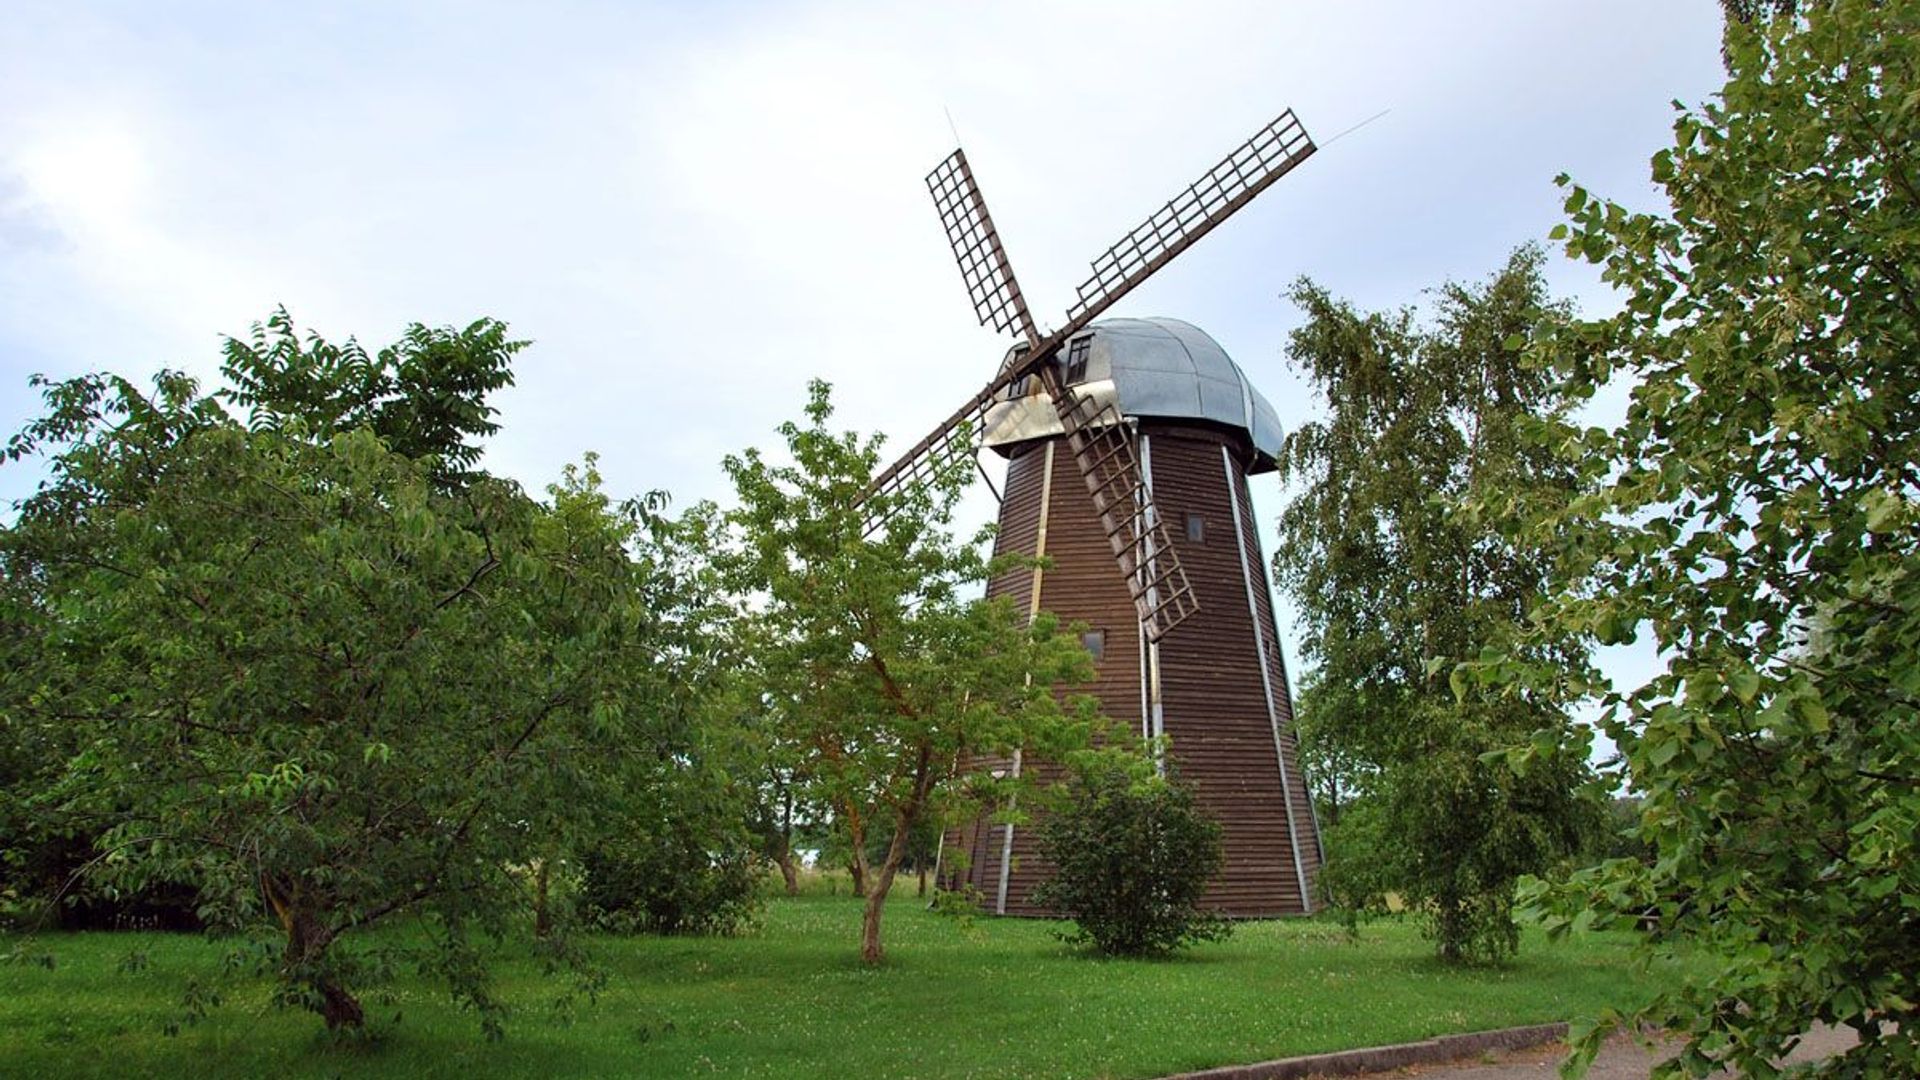 Vencavai Windmill